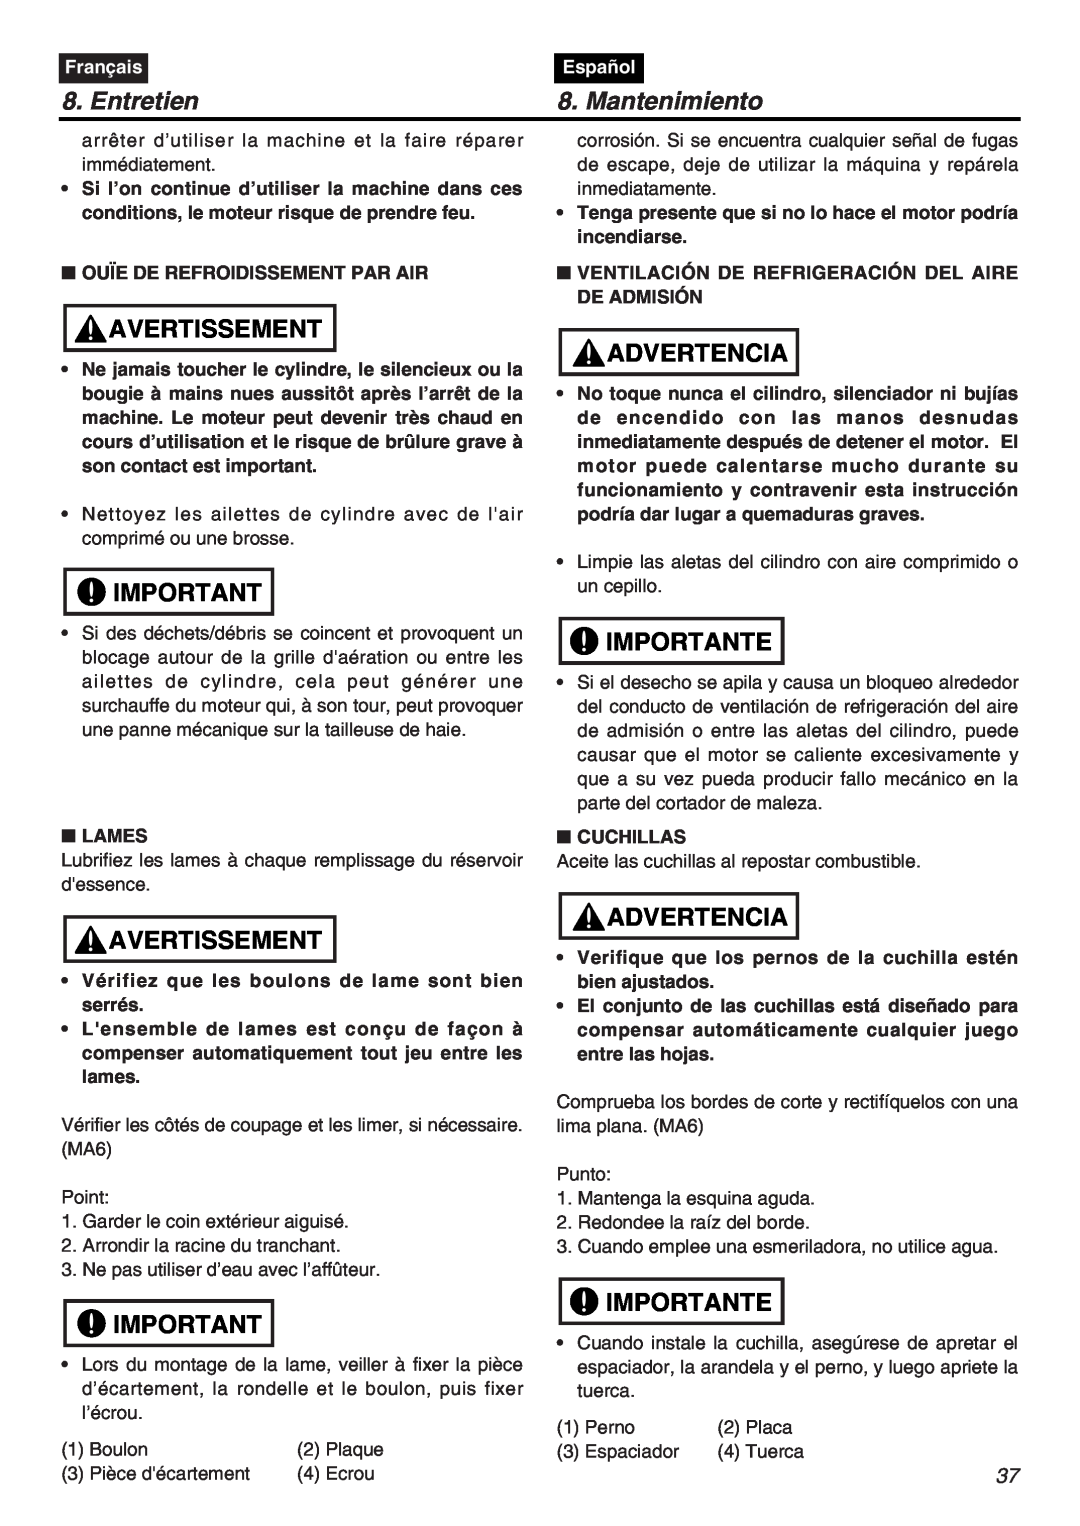 Zenoah HTZ2401L, HTZ2401-CA manual Entretien, Mantenimiento, Avertissement, Advertencia, Importante, Français, Español 